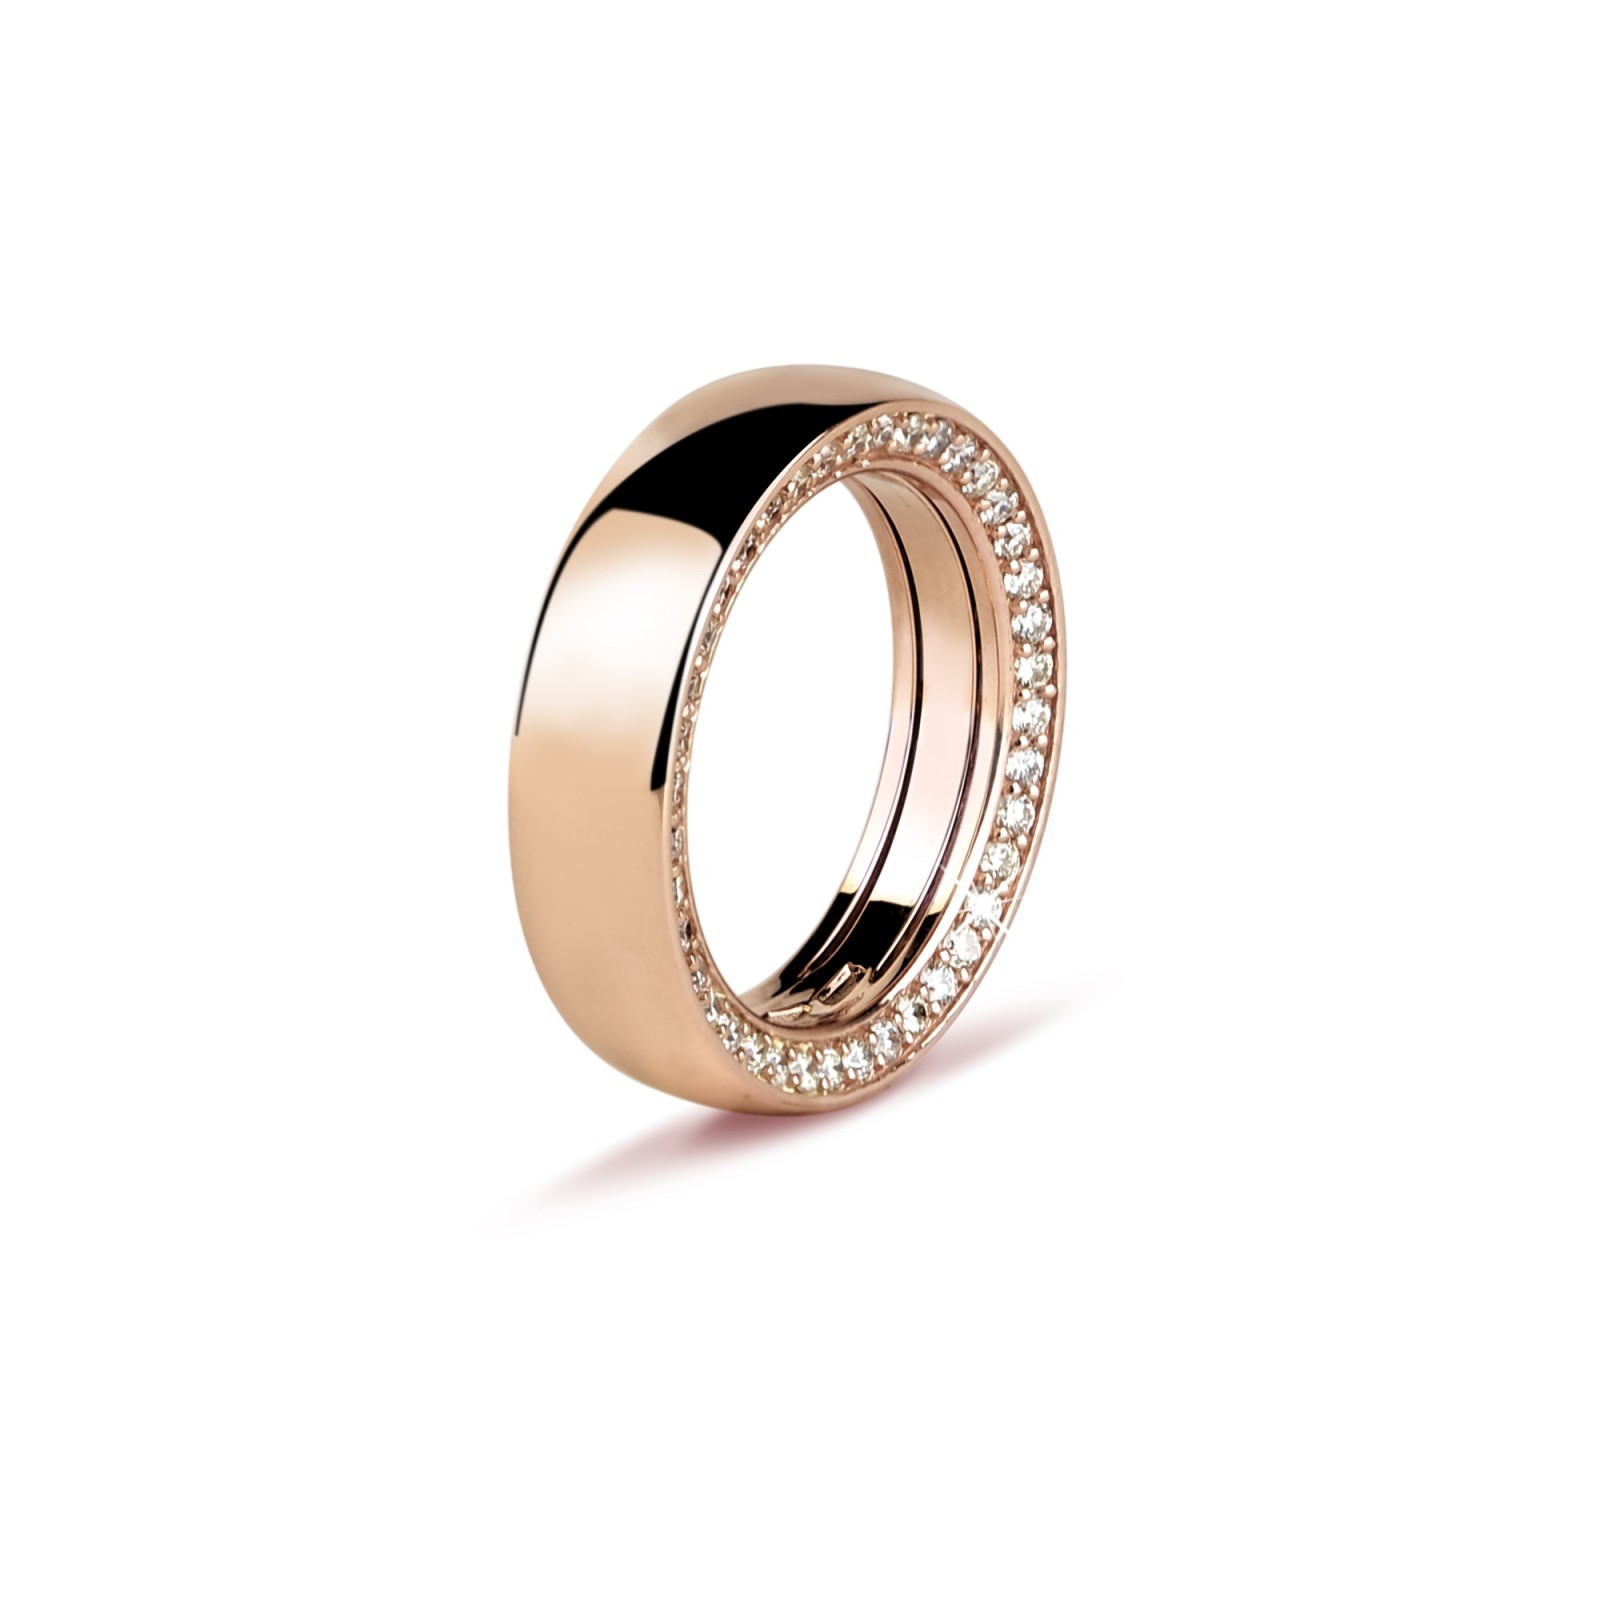 Fascia in Oro Rosa e Diamanti  - Valadier shop online